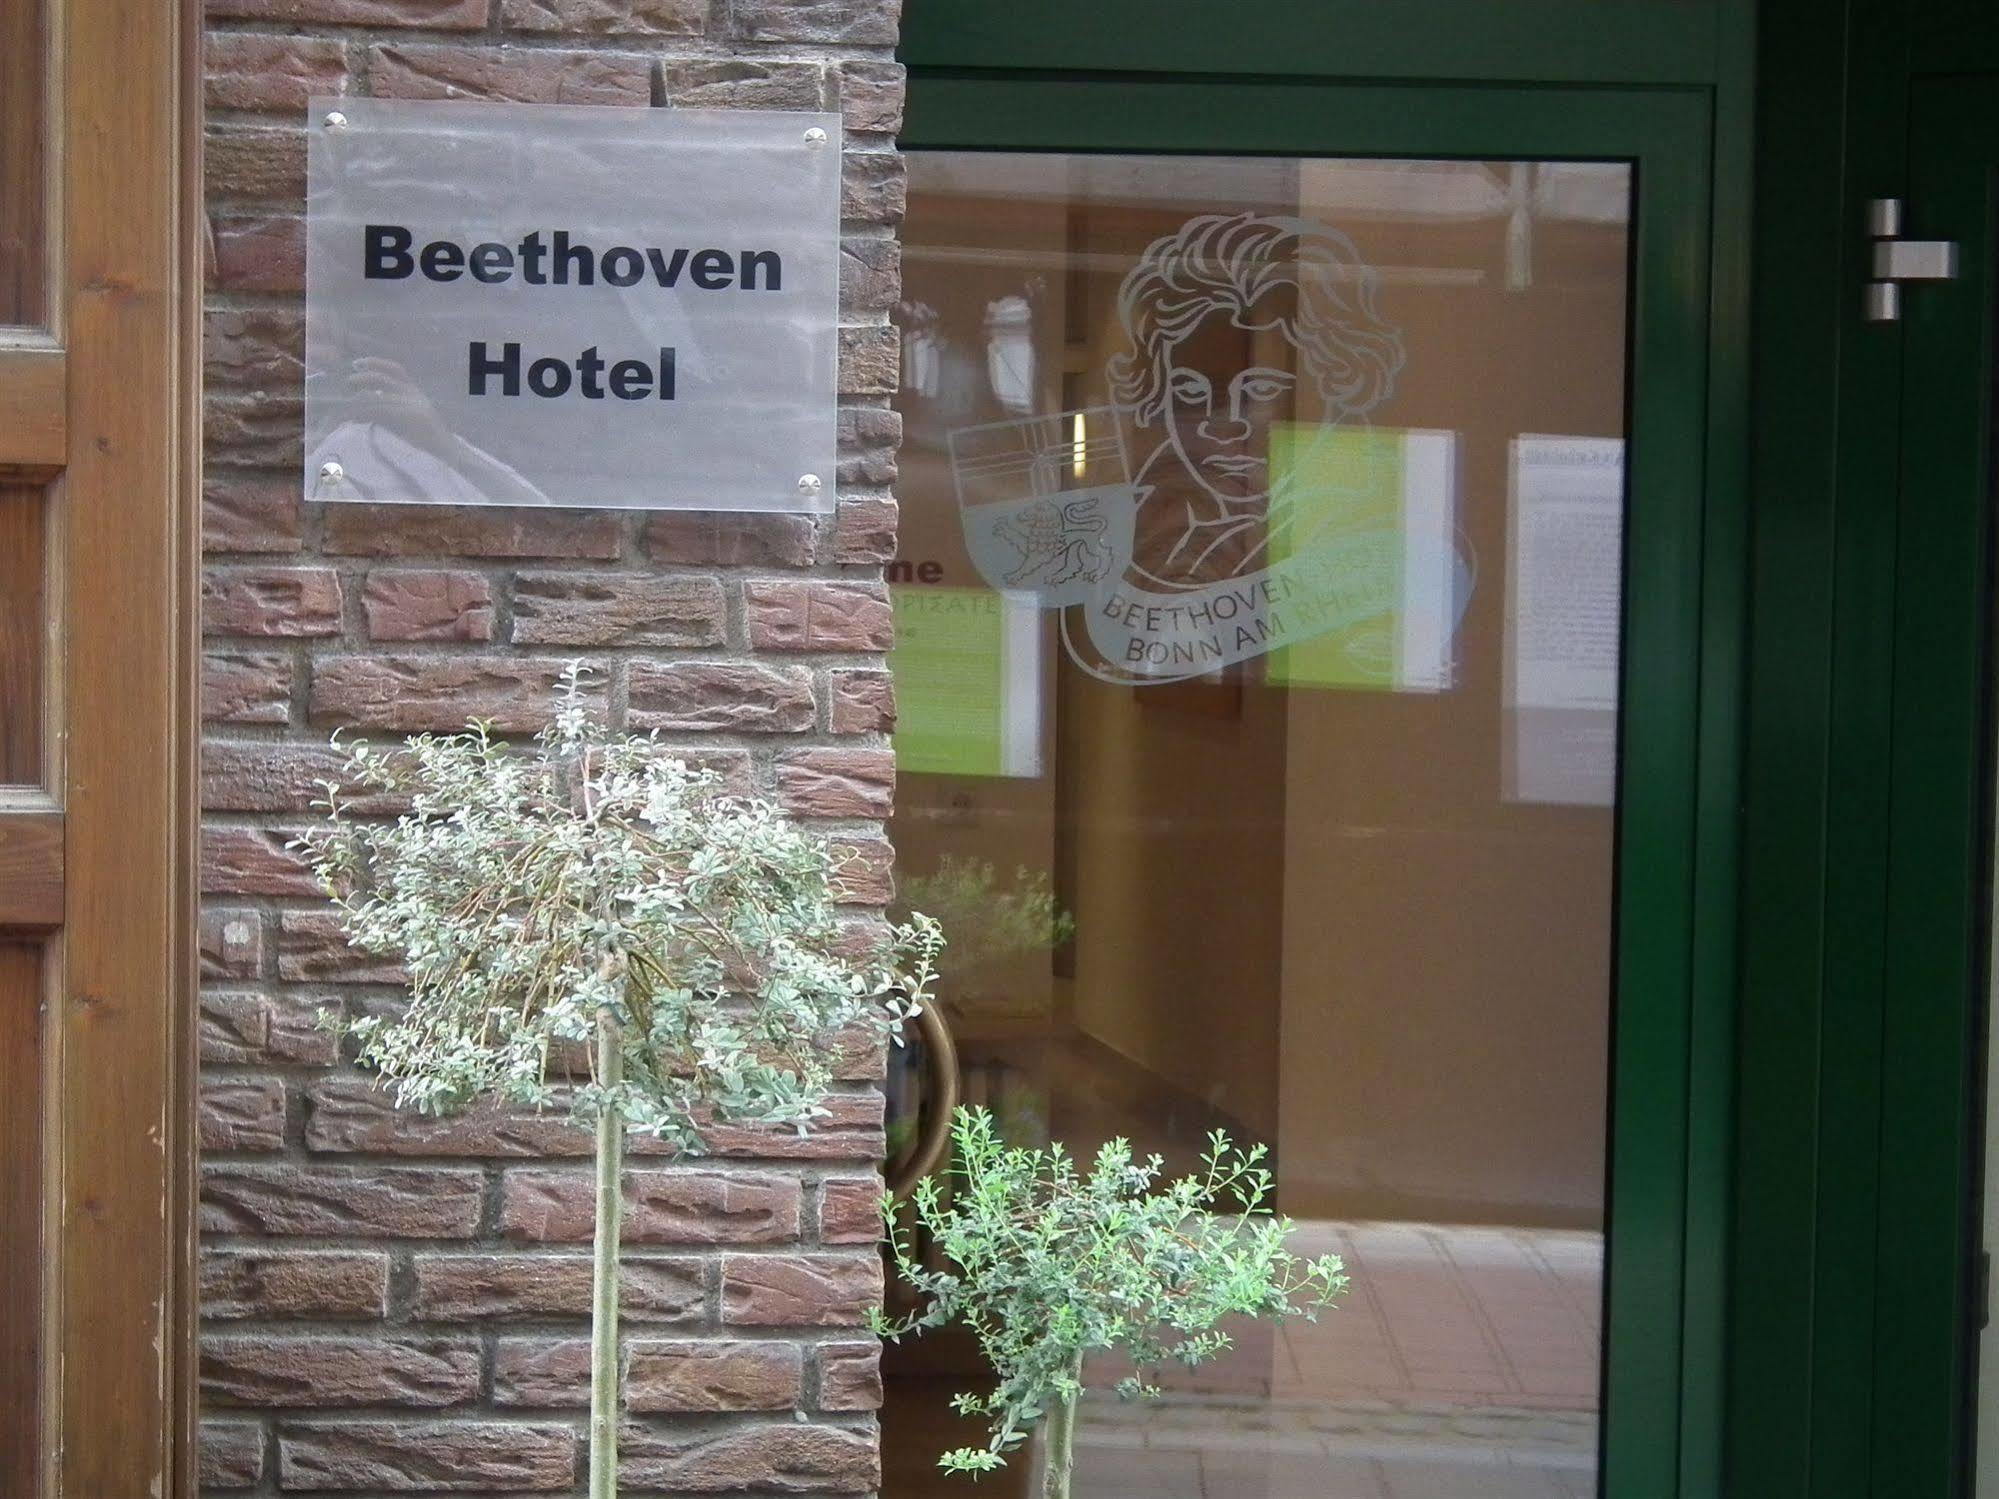 Beethoven Hotel Dreesen - Furnished By Boconcept Bonn Esterno foto